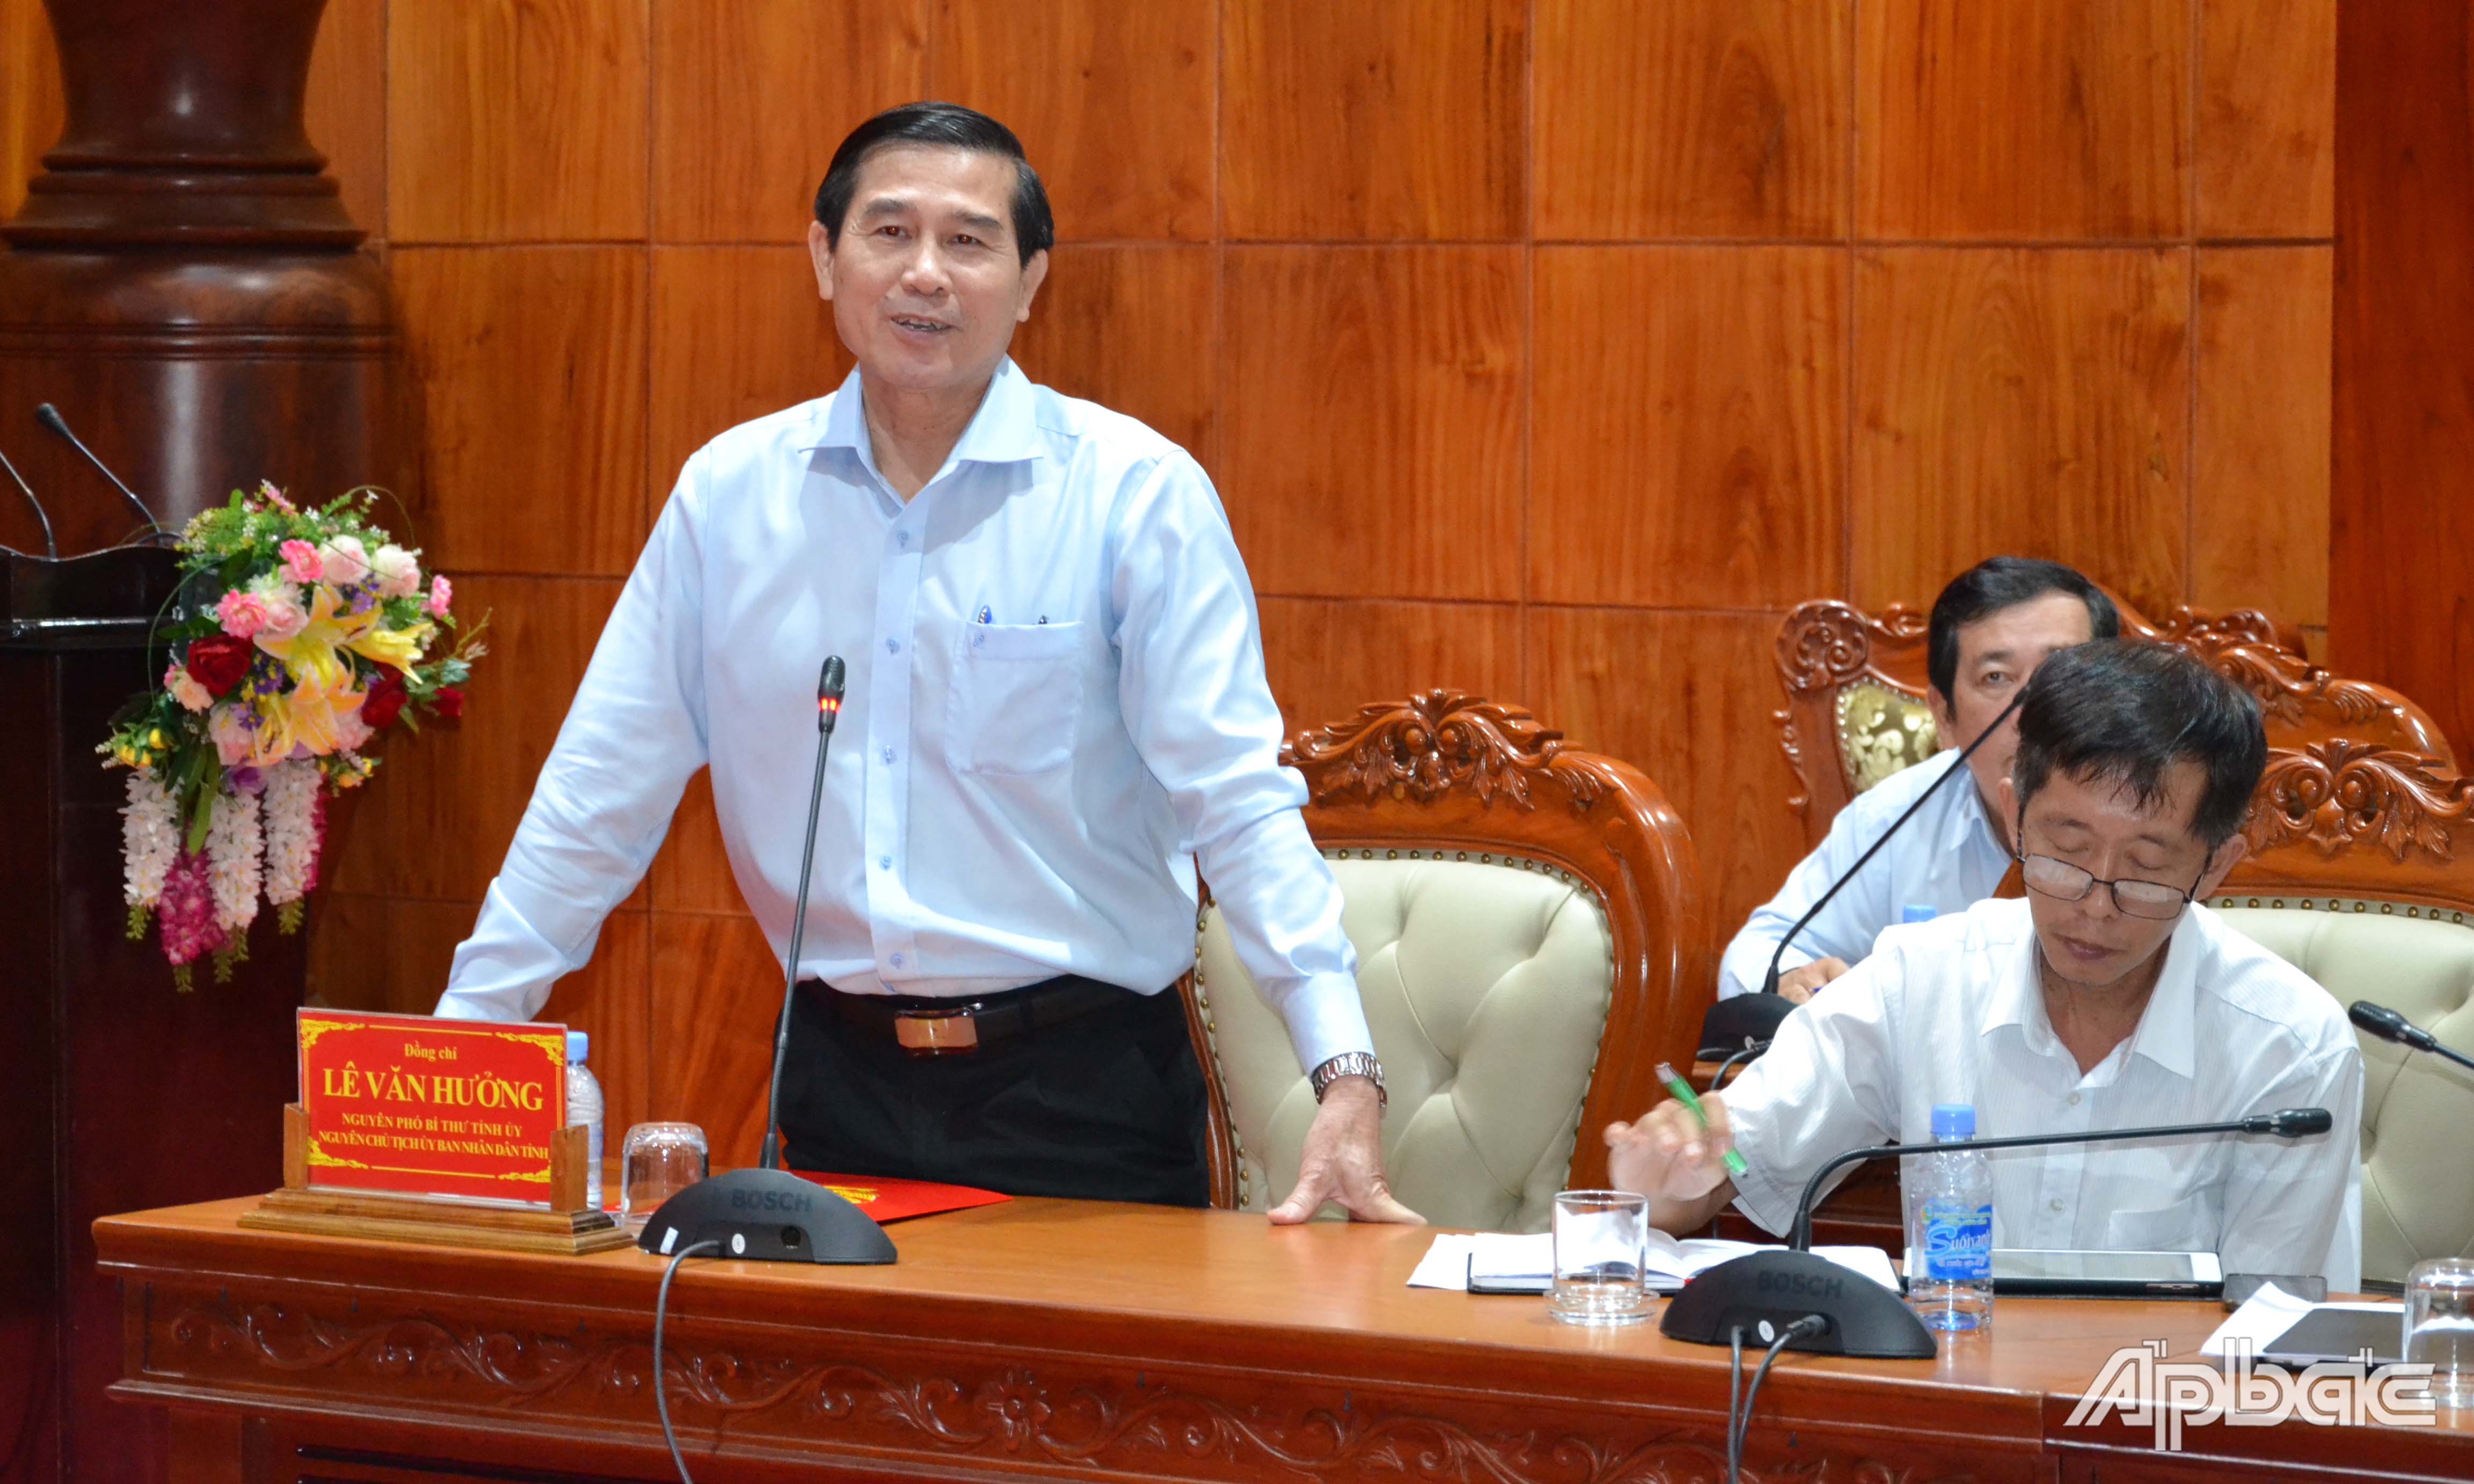 Đồng chí Lê Văn Hưởng phát biểu tại buổi làm việc.